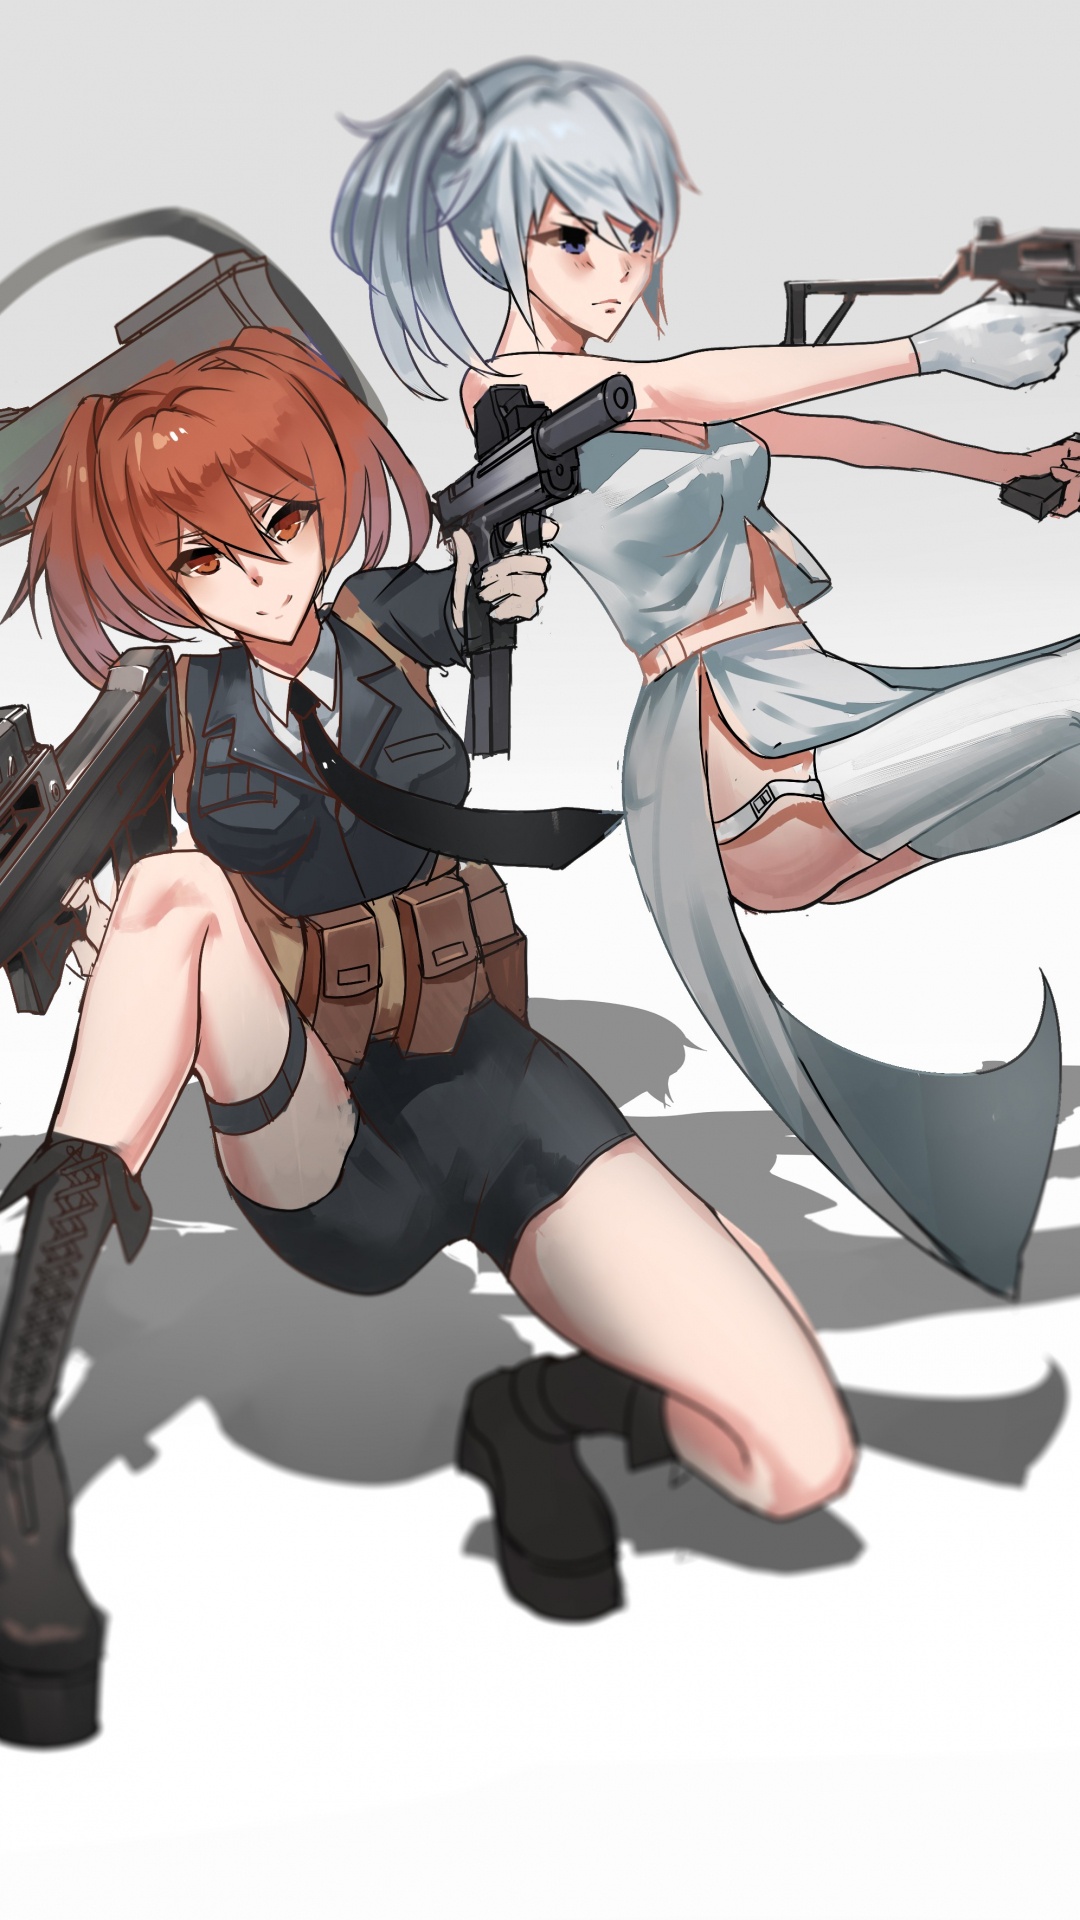 Mujer en Vestido Blanco y Negro Sosteniendo un Personaje de Anime de Rifle. Wallpaper in 1080x1920 Resolution